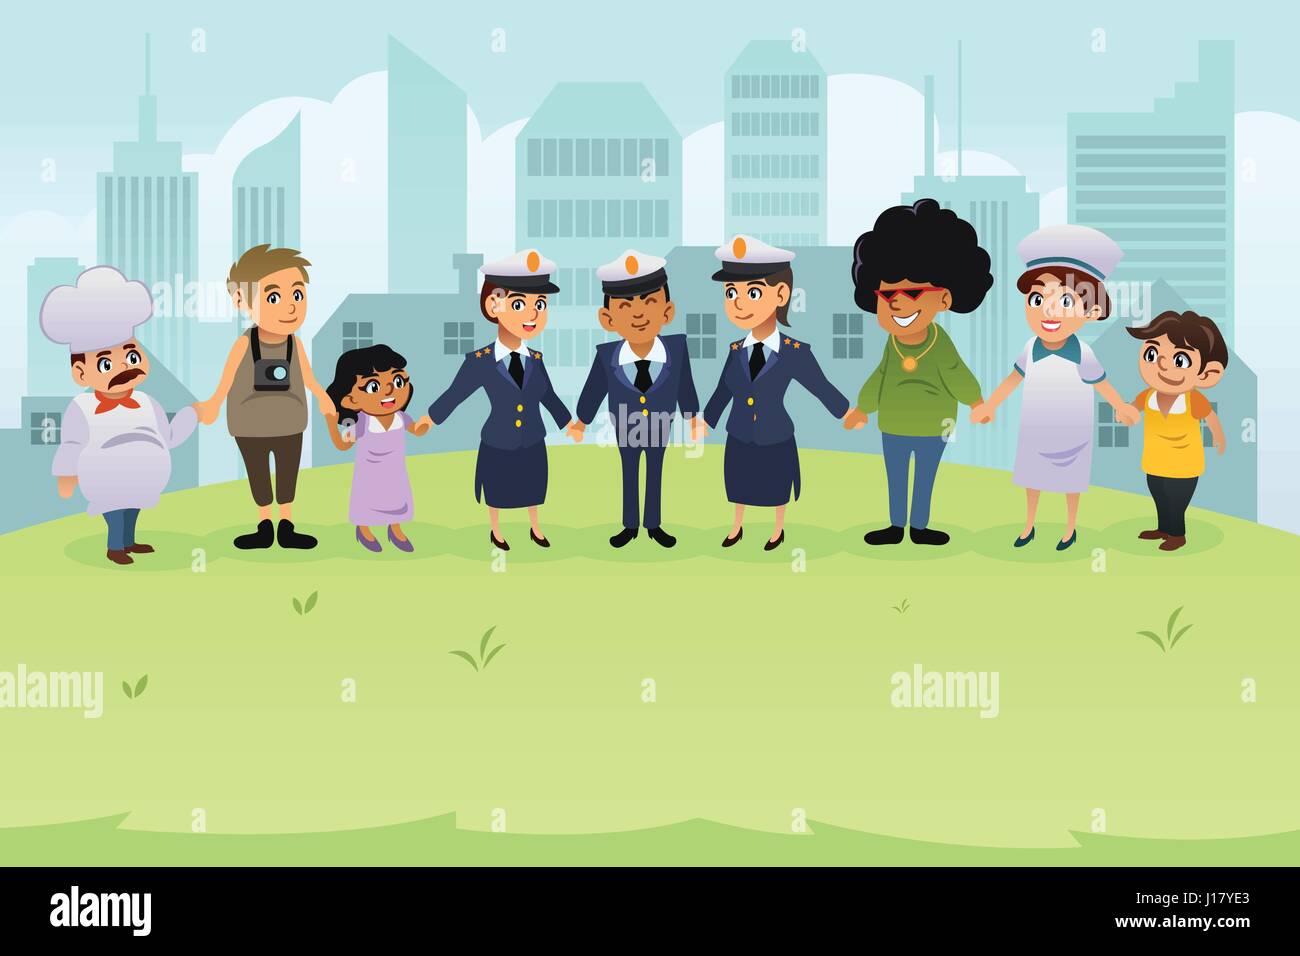 Eine Vektor-Illustration von Polizisten und PolizistInnen, die Hand in Hand mit den normalen Bürgern Stock Vektor